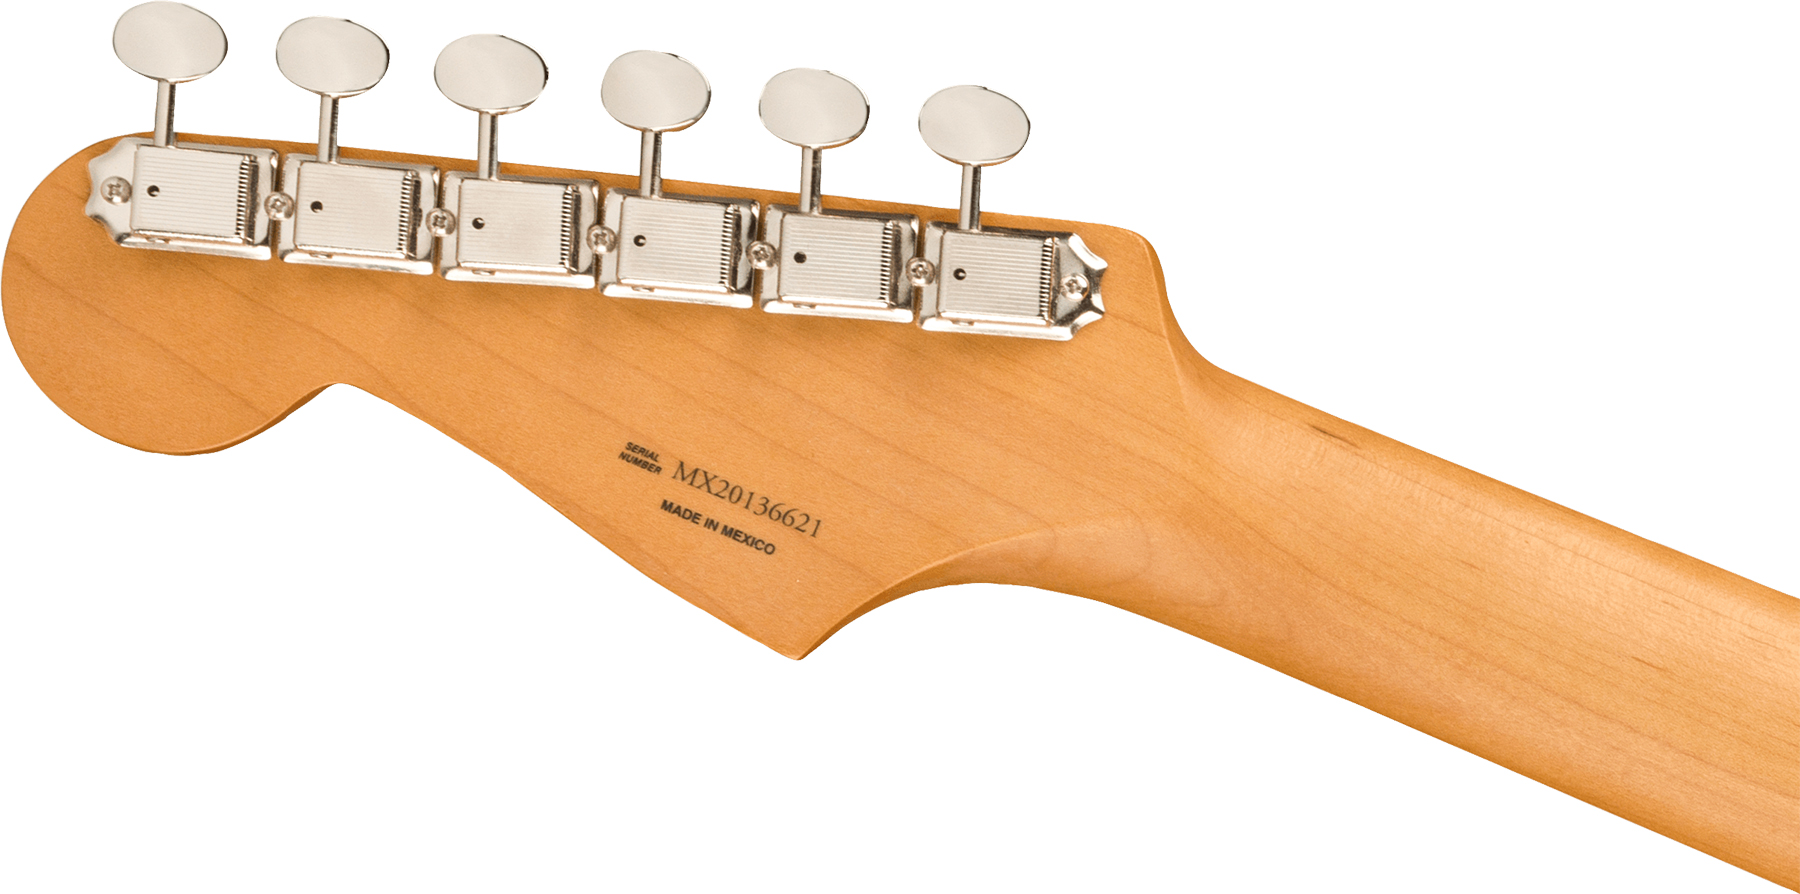 Fender Strat Noventa Mex Ss Ht Pf +housse - Crimson Red Transparent - Str shape electric guitar - Variation 3